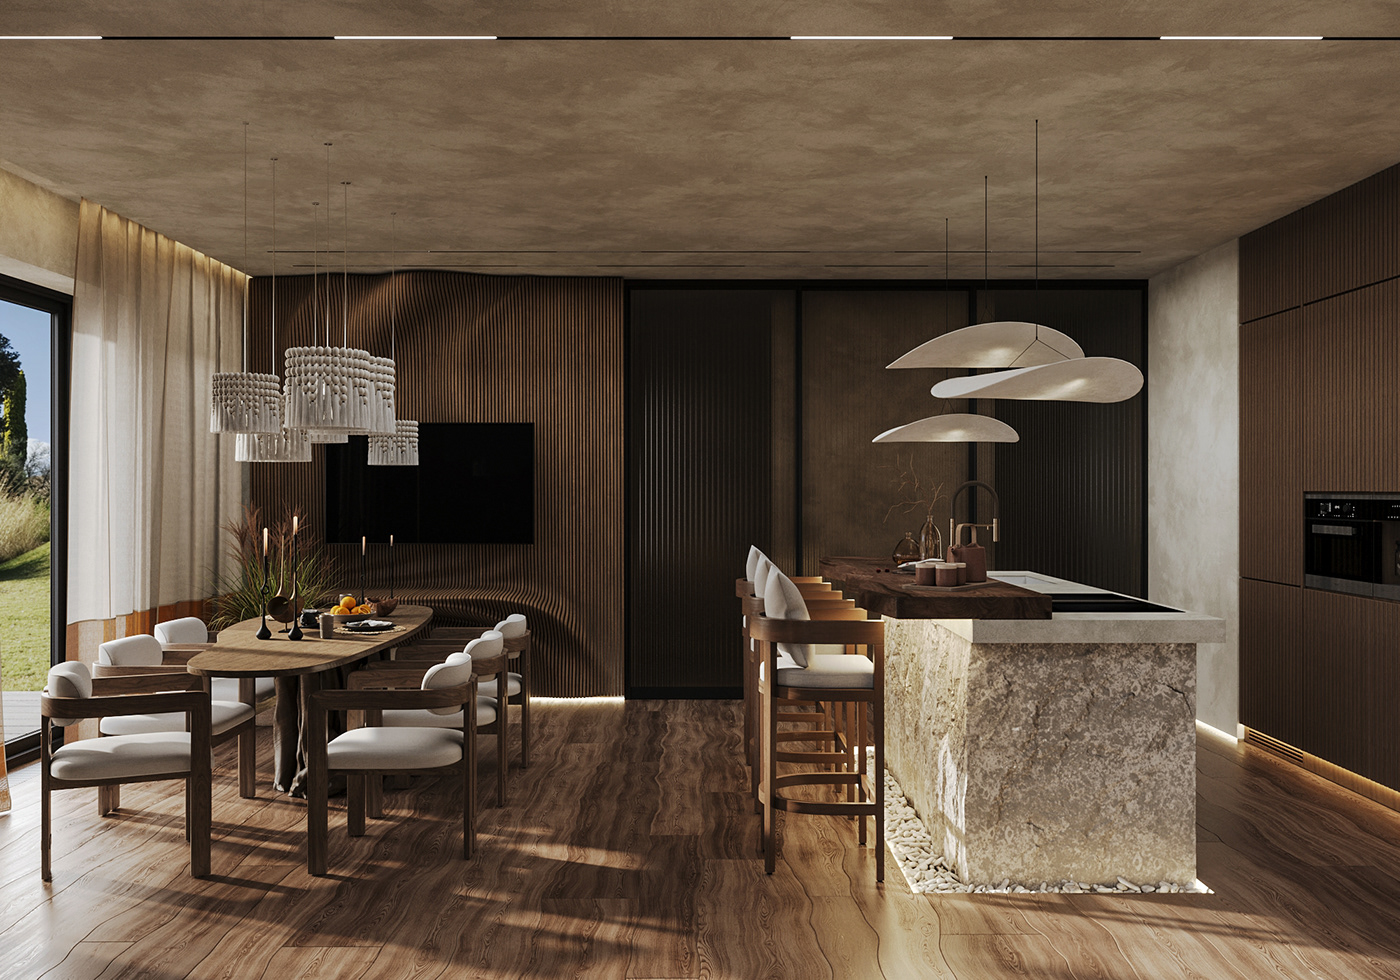 Interior modern interior design  visualization luxury Wabi Sabi wabisabi interior интерьер дизайн интерьера living kitchen